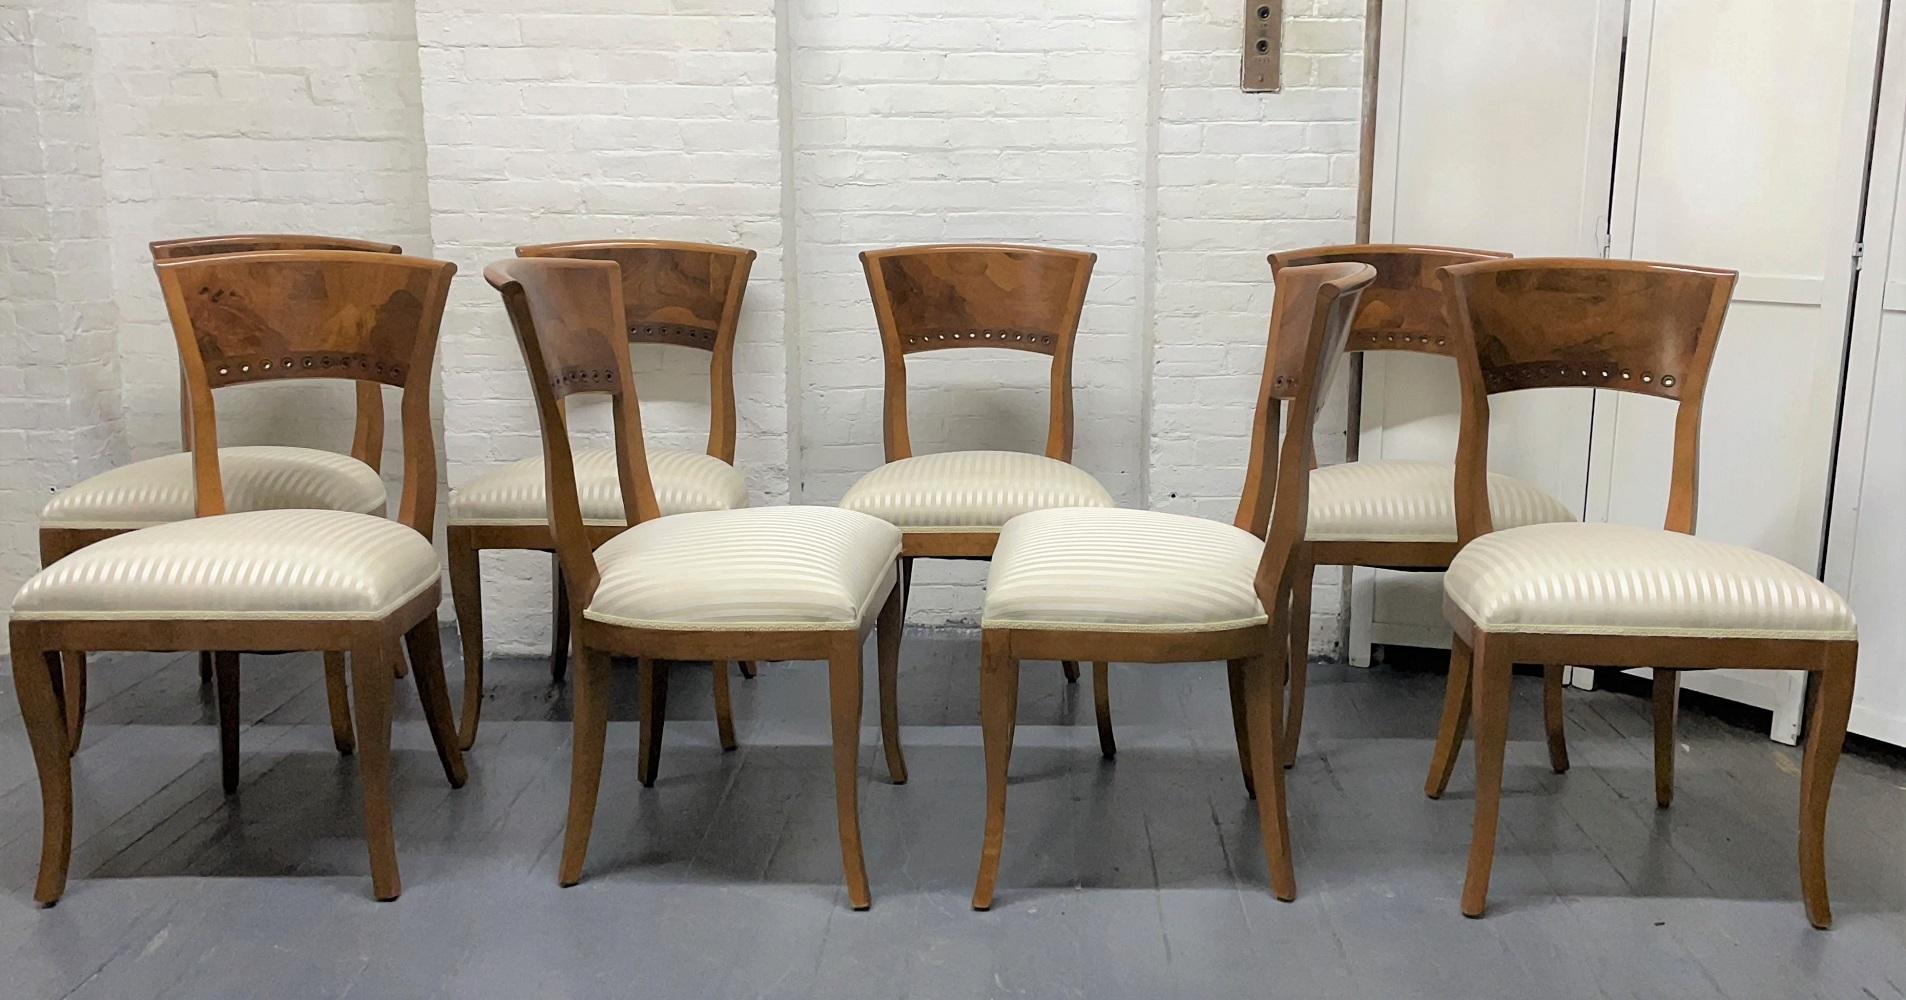 Ensemble de 8 chaises de salle à manger de style Biedermeier. Les chaises sont en cerisier et ont un dossier en bois de noyer.